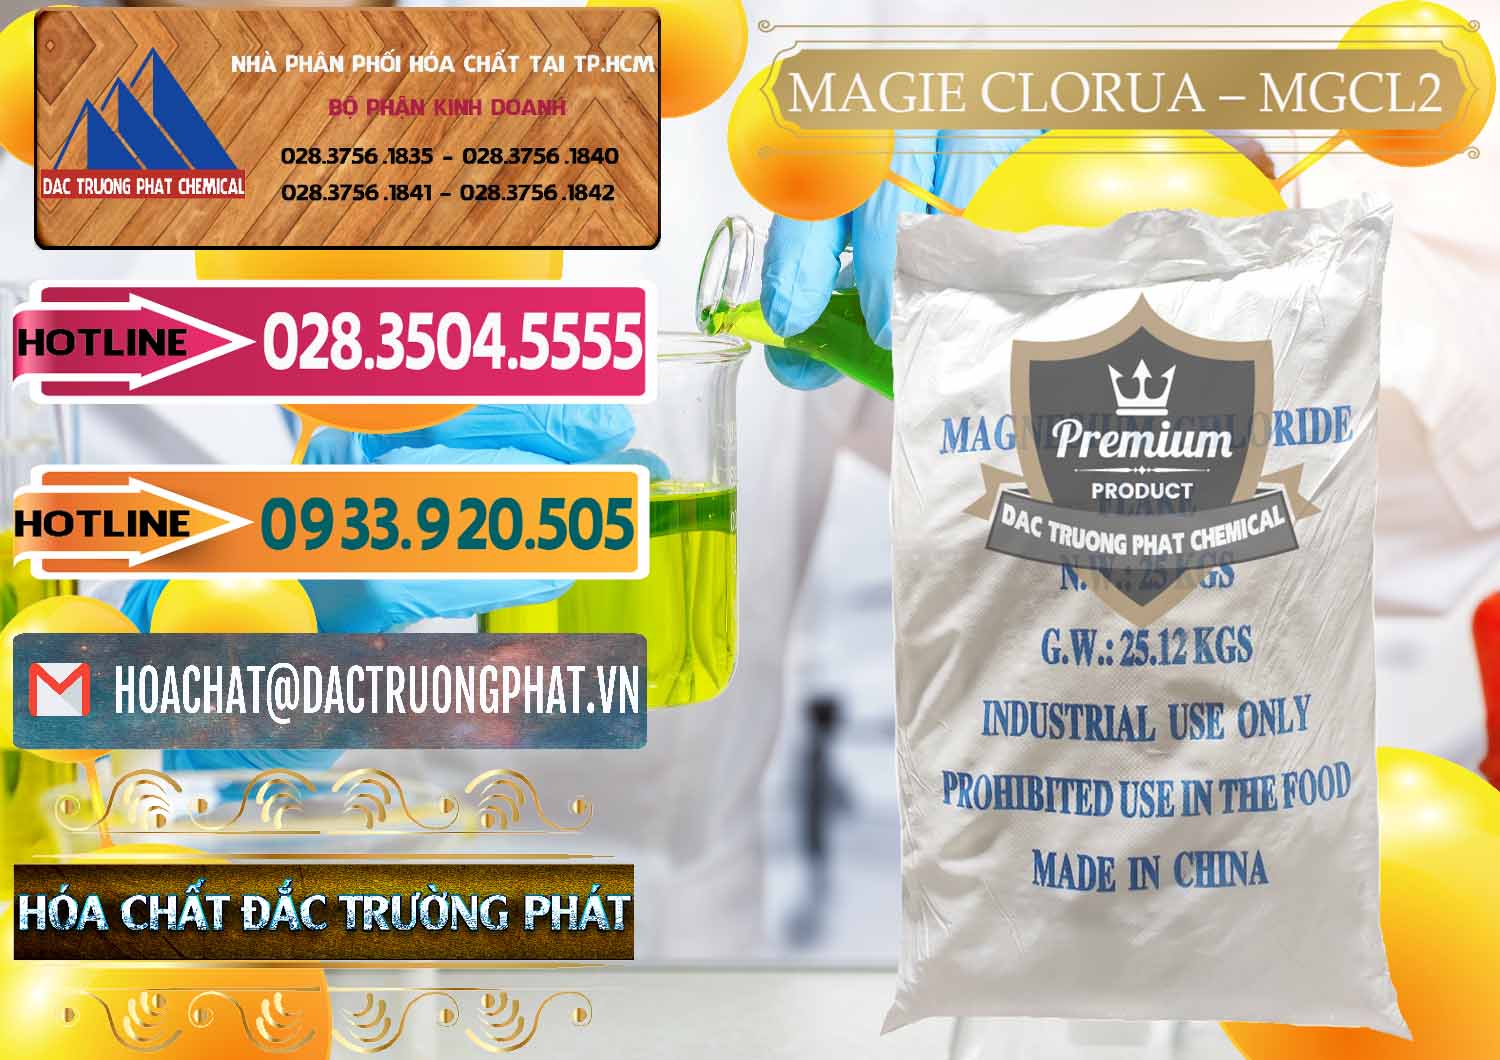 Đơn vị phân phối & bán Magie Clorua – MGCL2 96% Dạng Vảy Trung Quốc China - 0091 - Cung cấp _ bán hóa chất tại TP.HCM - dactruongphat.vn